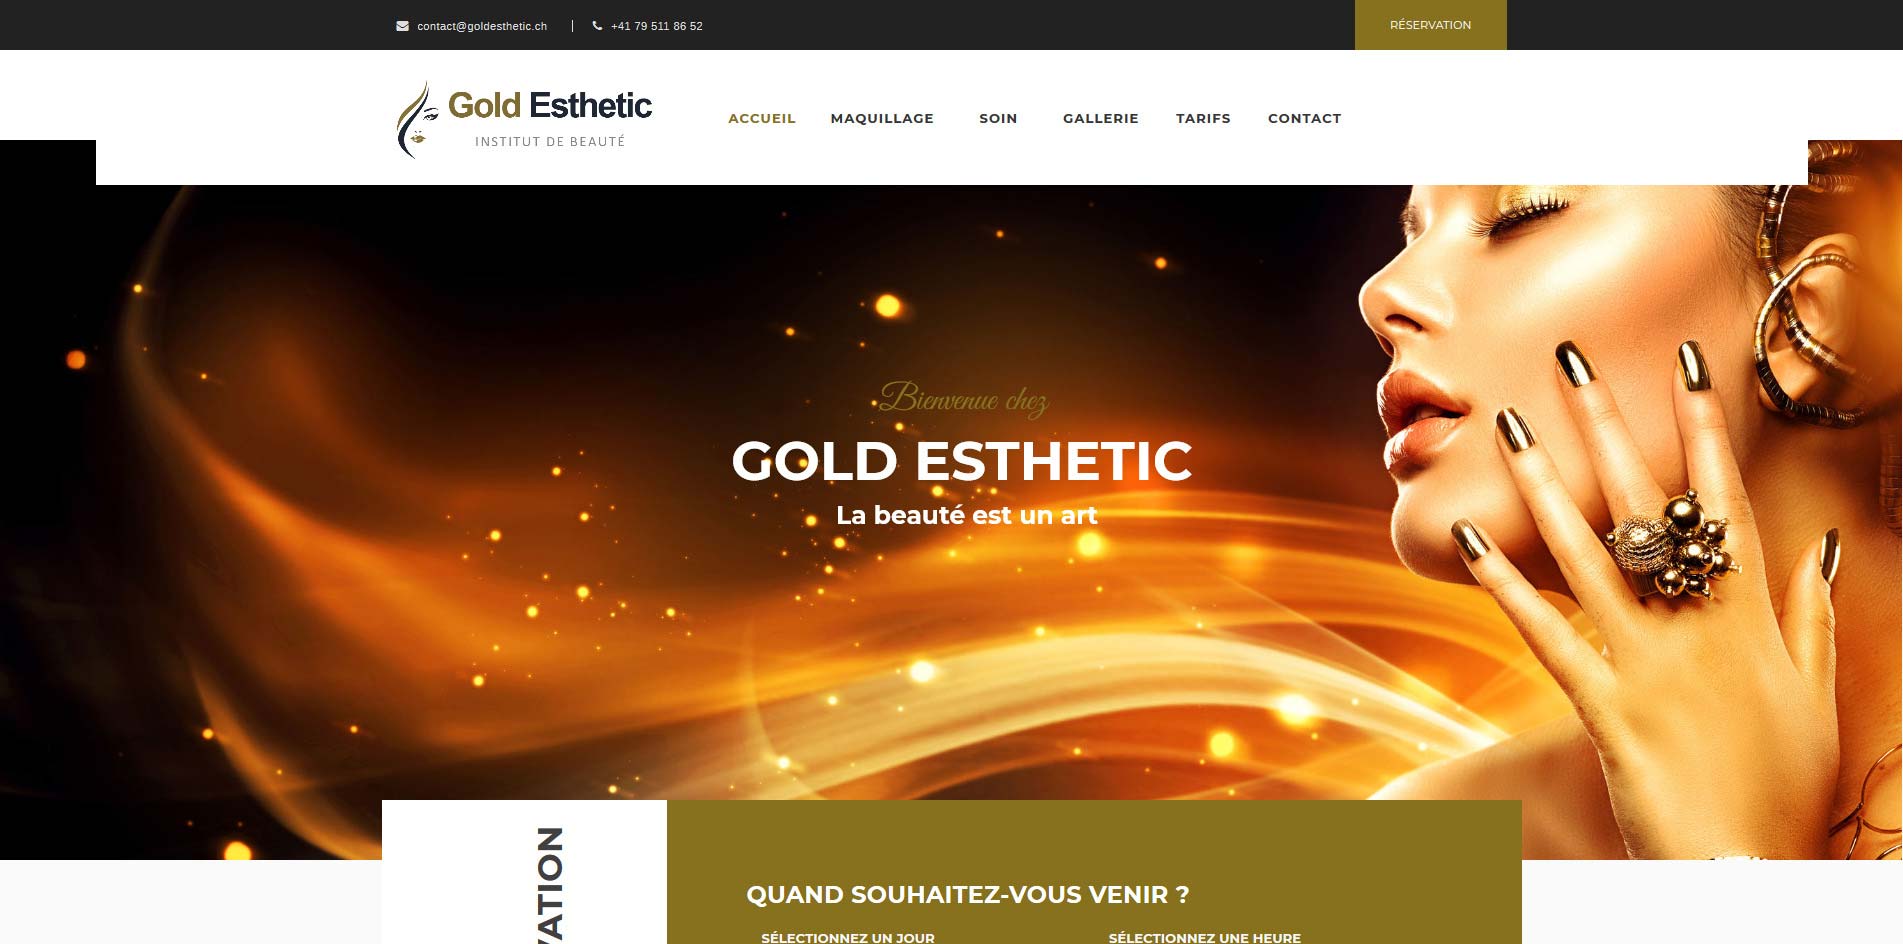 THALES IT - Réalisation sites Internet - Gold Esthetic